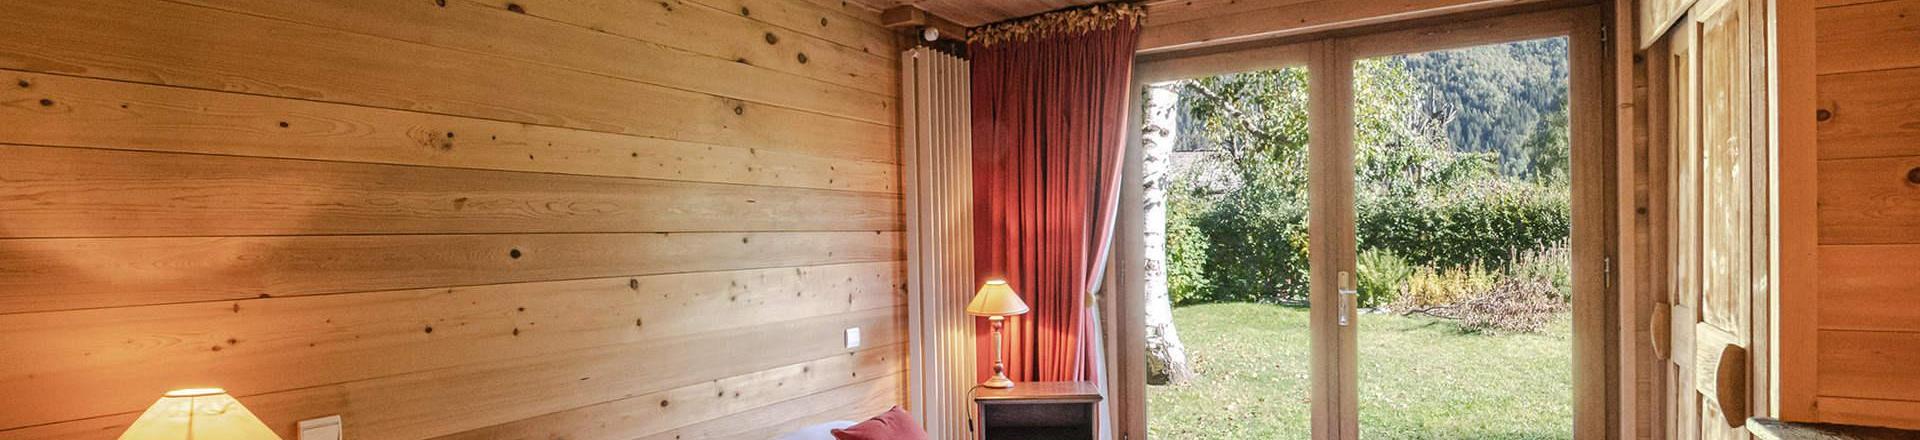 Rent in ski resort 5 room chalet 8 people - Chalet Eole - Chamonix - Bedroom